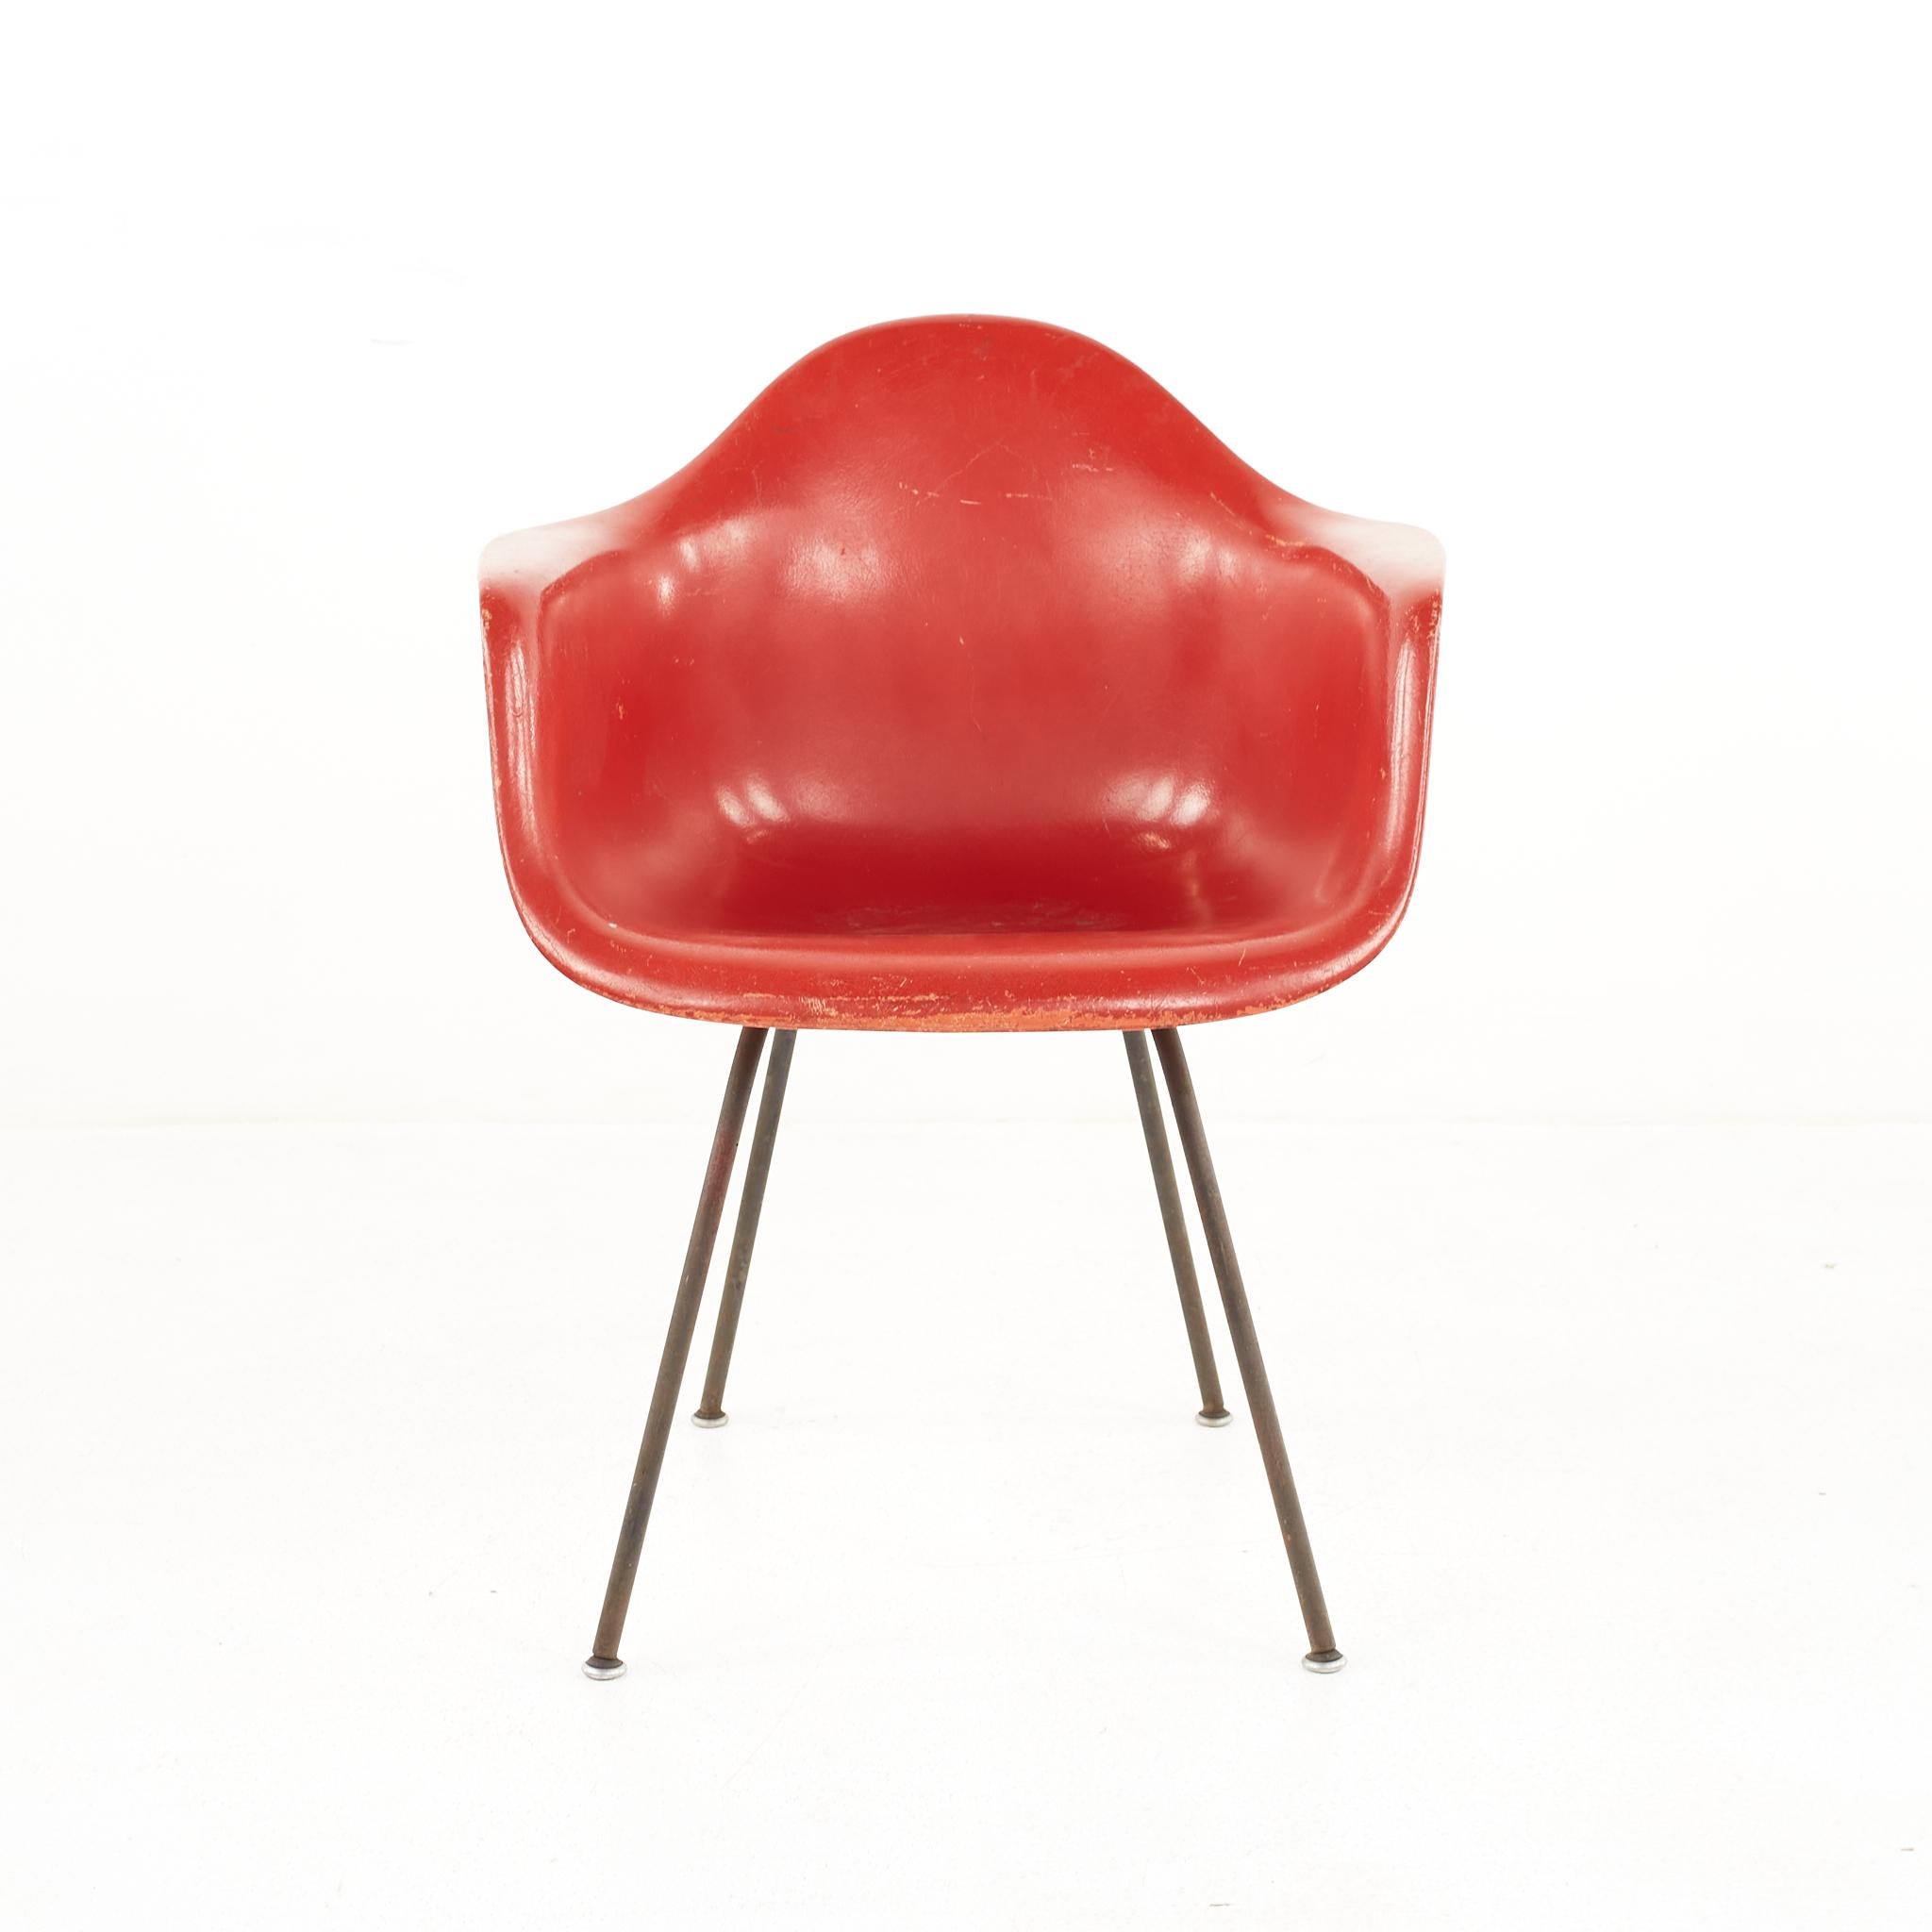 Eames für Herman Miller Muschelroter Stuhl aus Glasfaser aus der Mitte des Jahrhunderts

Der Stuhl misst: 24,75 breit x 22 tief x 31,25 hoch, mit einer Sitzhöhe von 18 Zoll und Armhöhe von 26 Zoll 

Alle Möbelstücke sind in einem so genannten